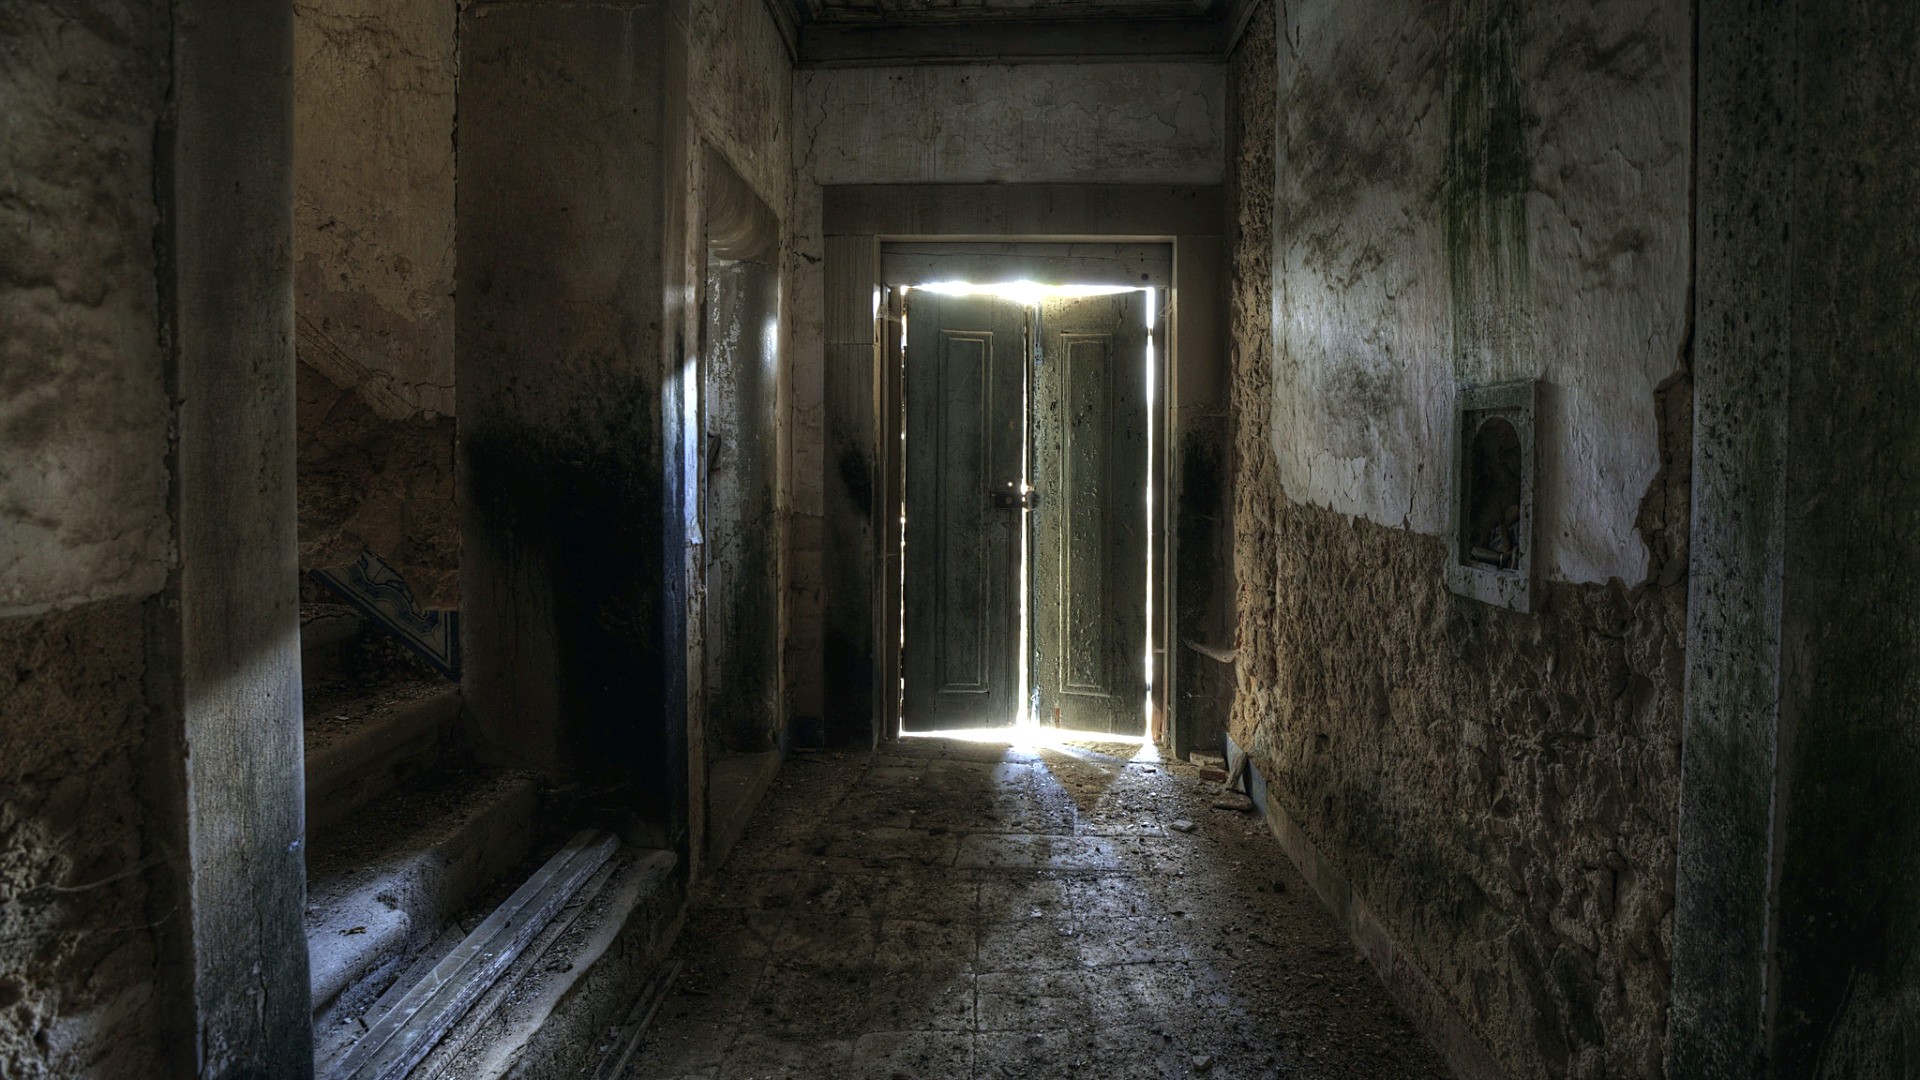 picture: escalera, puerta, fondo (image)